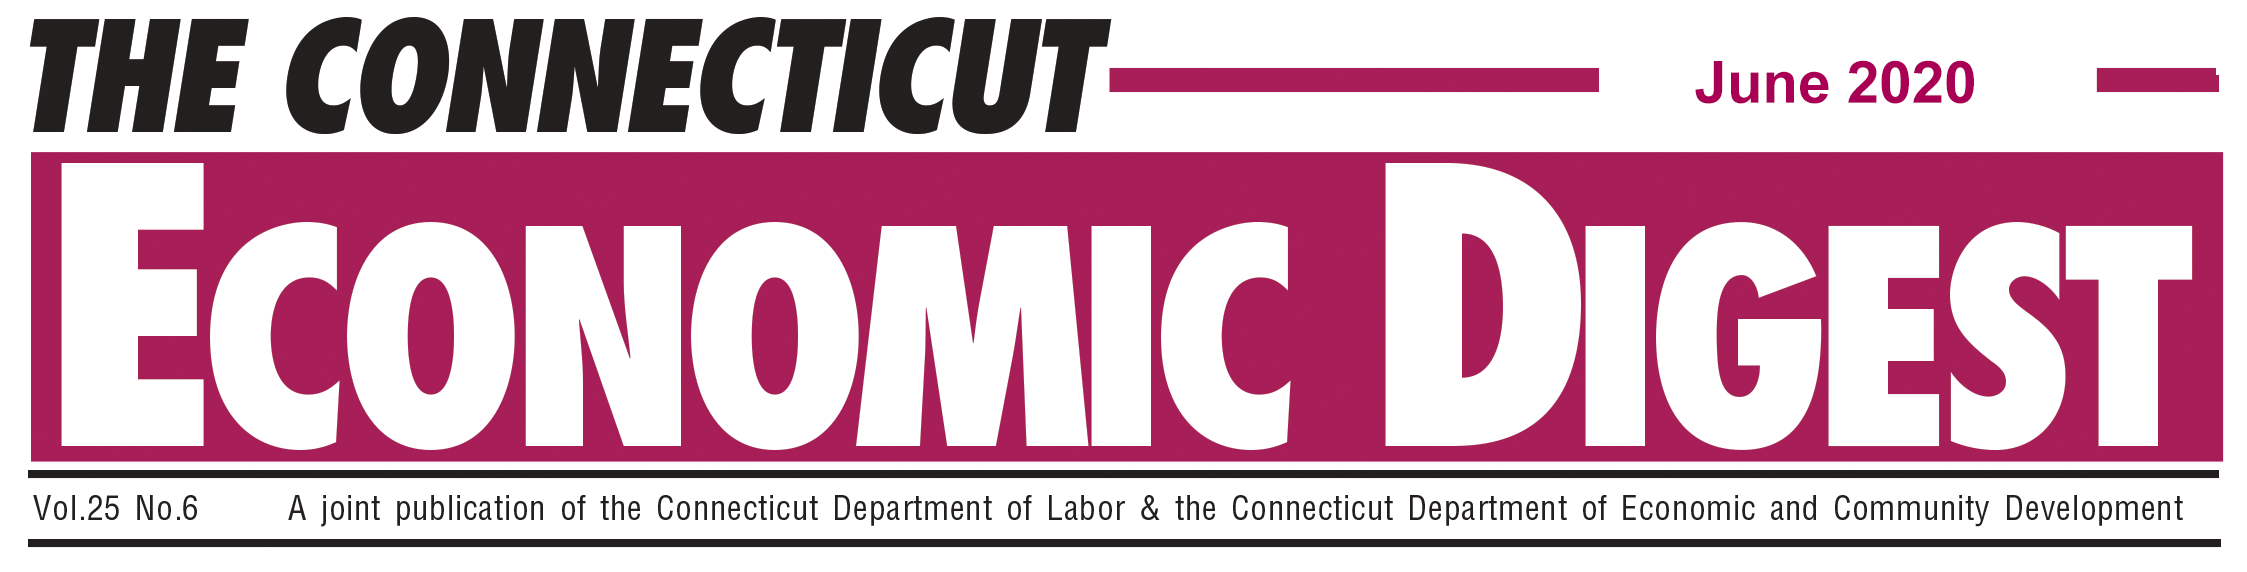 June 2020 Connecticut Economic Digest